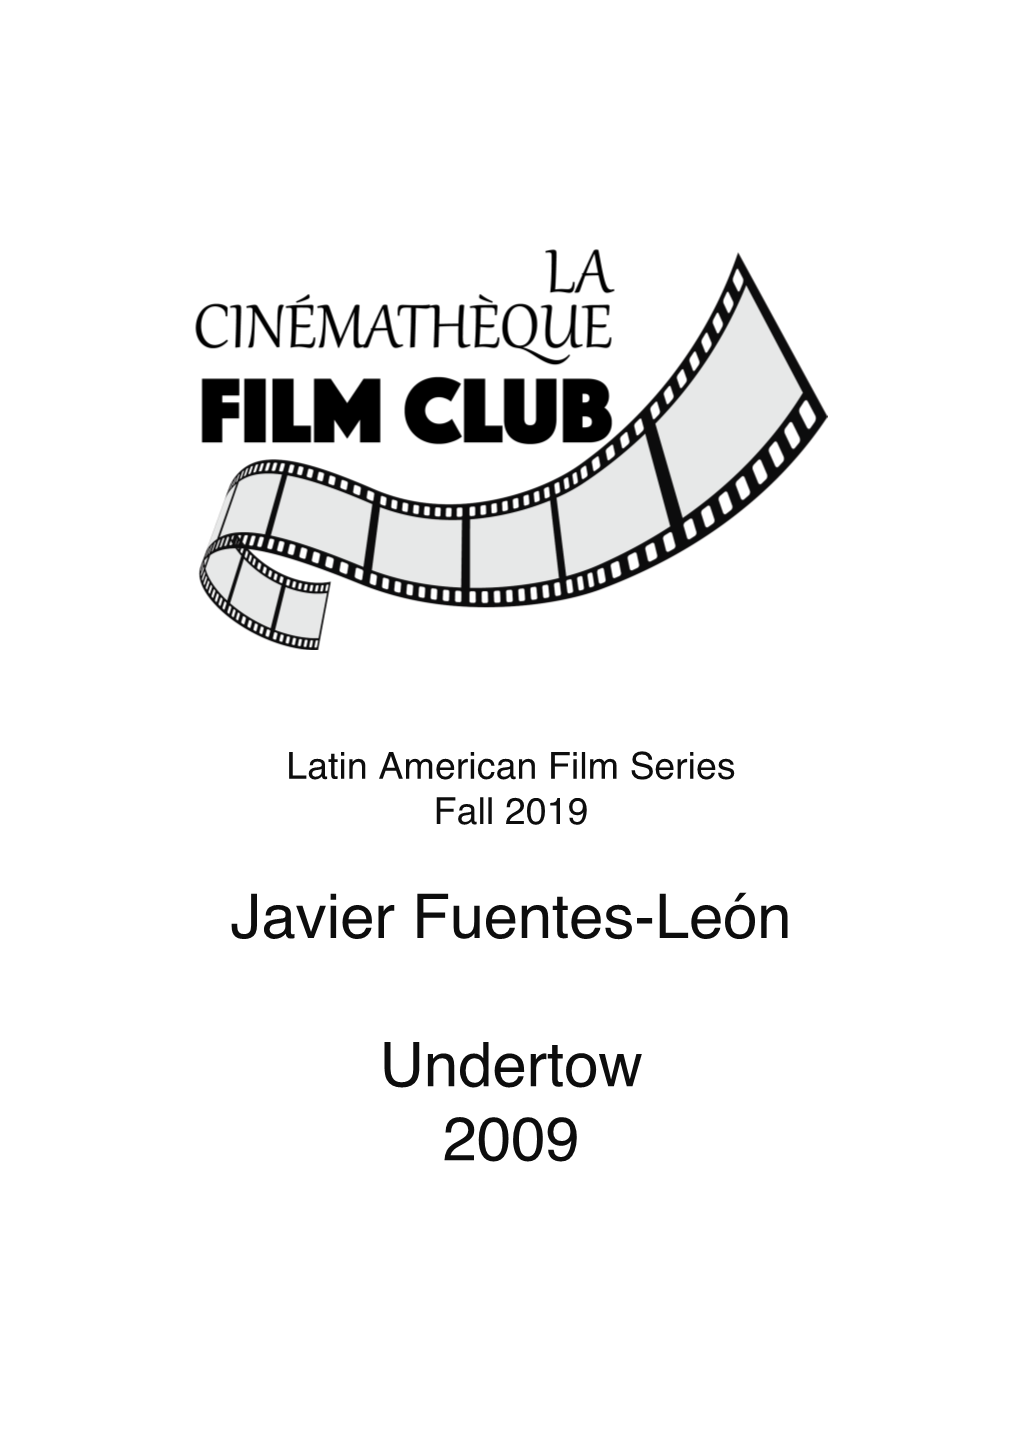 Javier Fuentes-León Undertow 2009